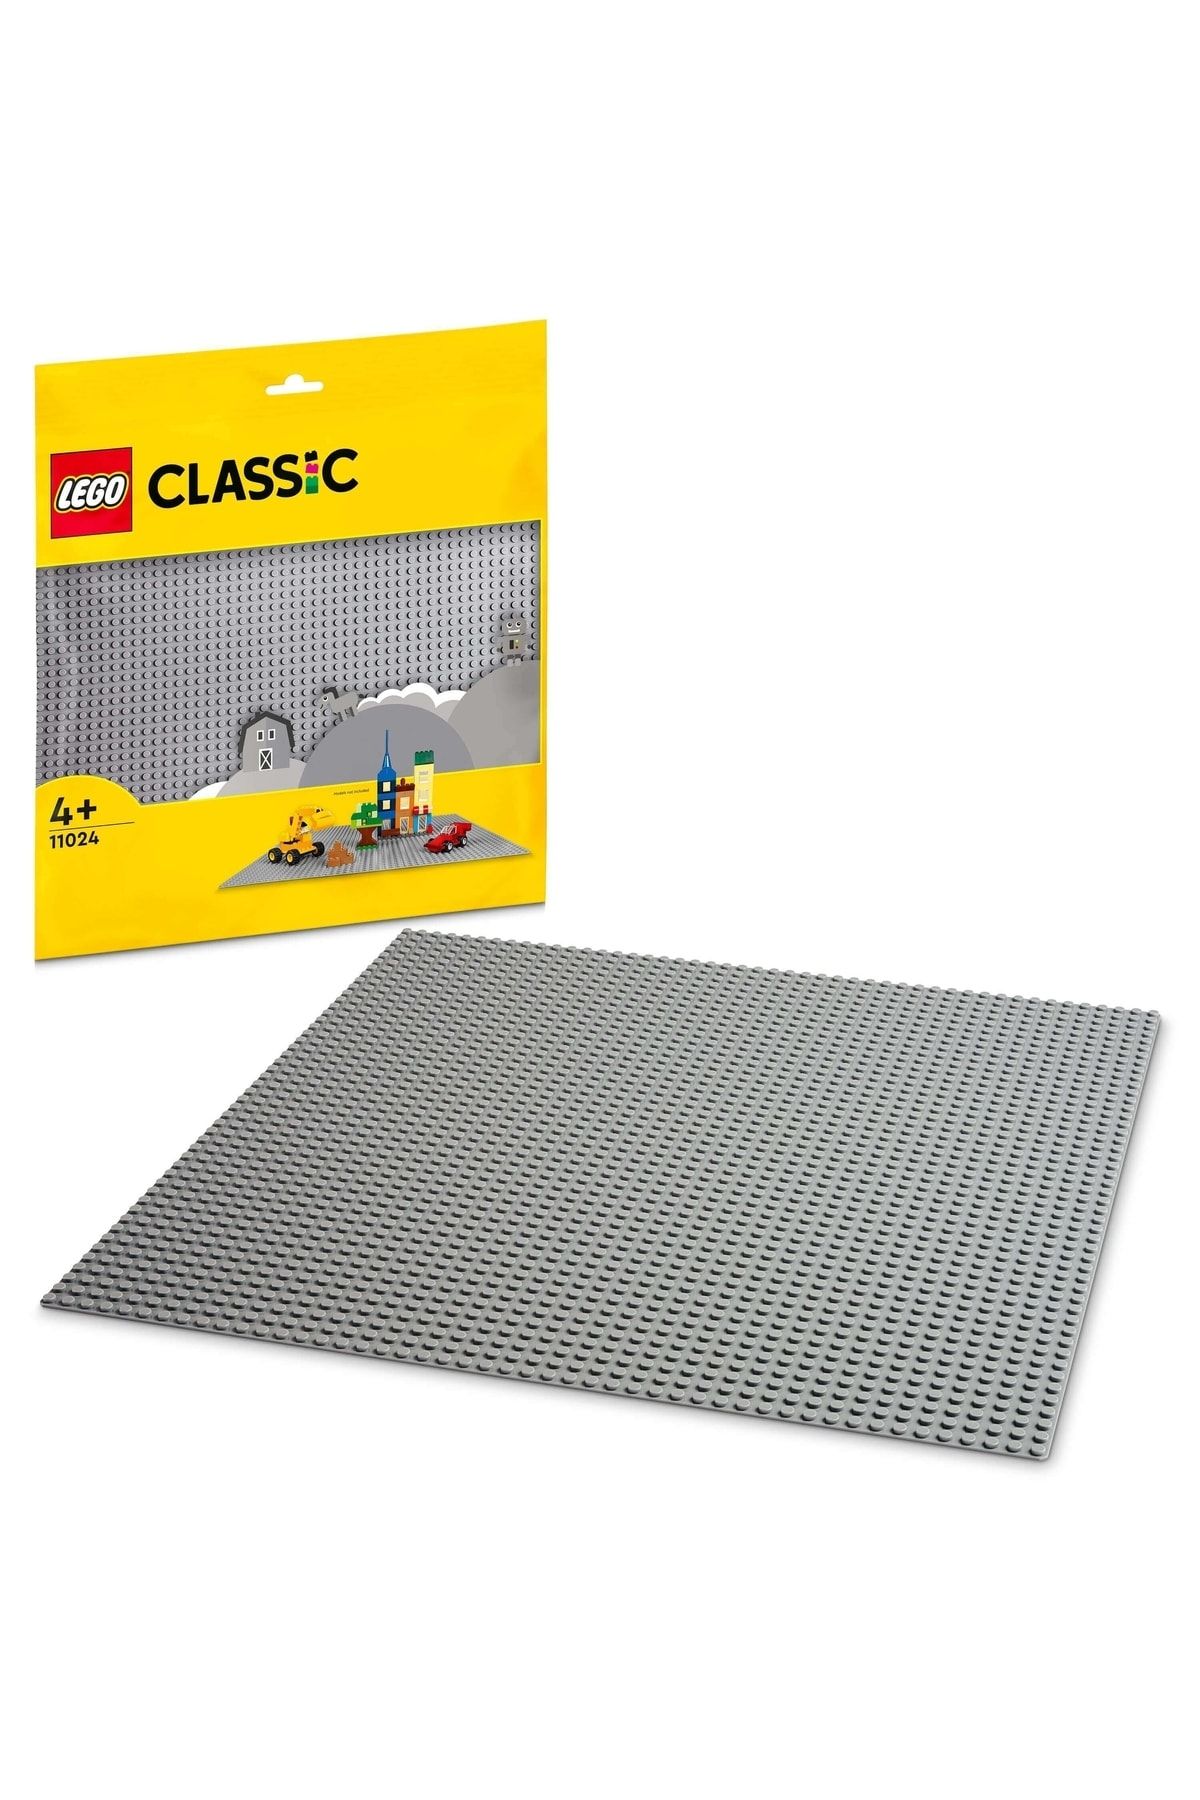 Classic Gri Plaka 11024 - 4 Yaş ve Üzeri LEGO Severler için Yaratıcı Yapım Seti (1 Parça)